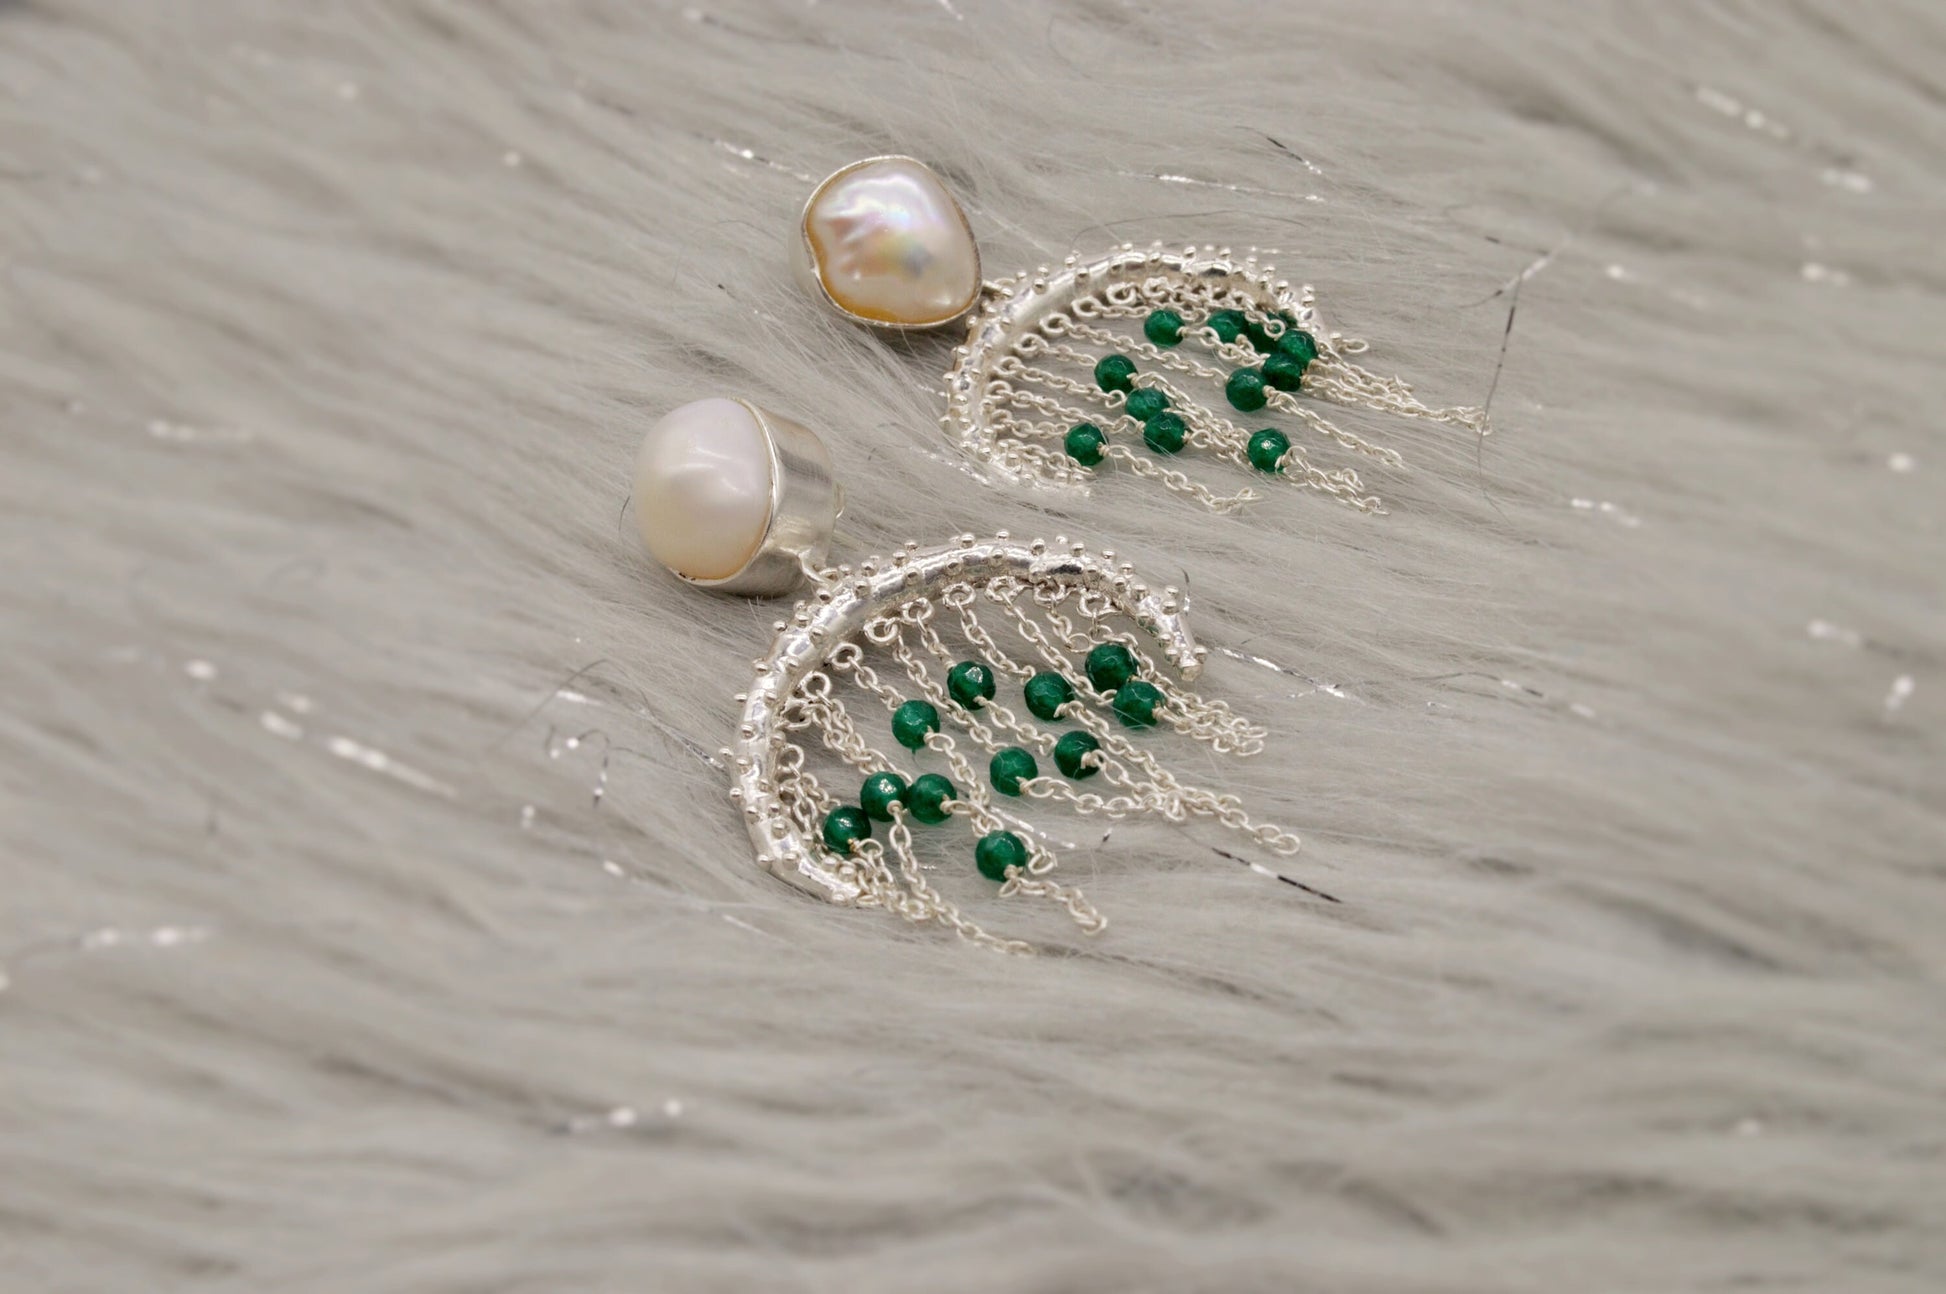 Green Onyx, Pearl Silver Earrings, June Birthstone, Dangle Drop Gemstone Earrings, Pearl Jewelry, Unique Statement Earrings, Gift For Her